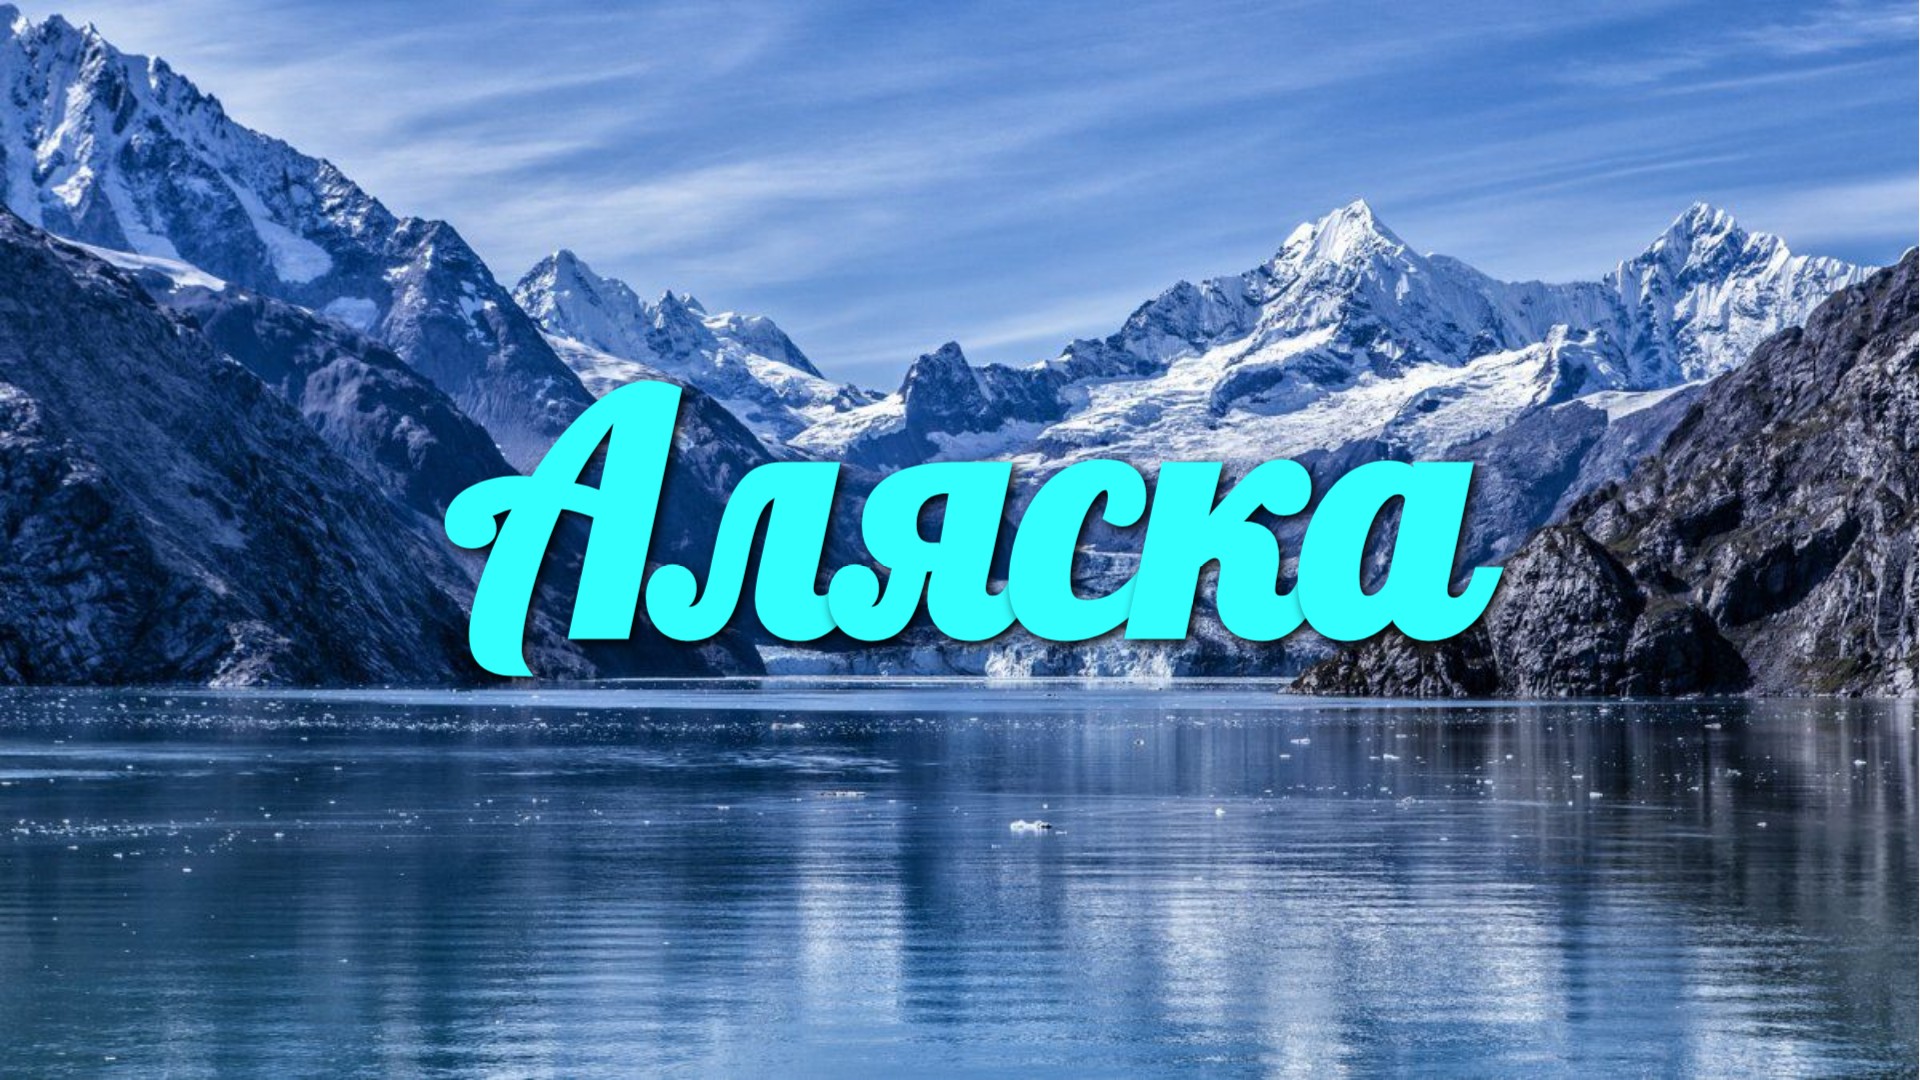 Аляска, Живописный фильм со спокойной музыкой, Медитацией на сон и расслабление